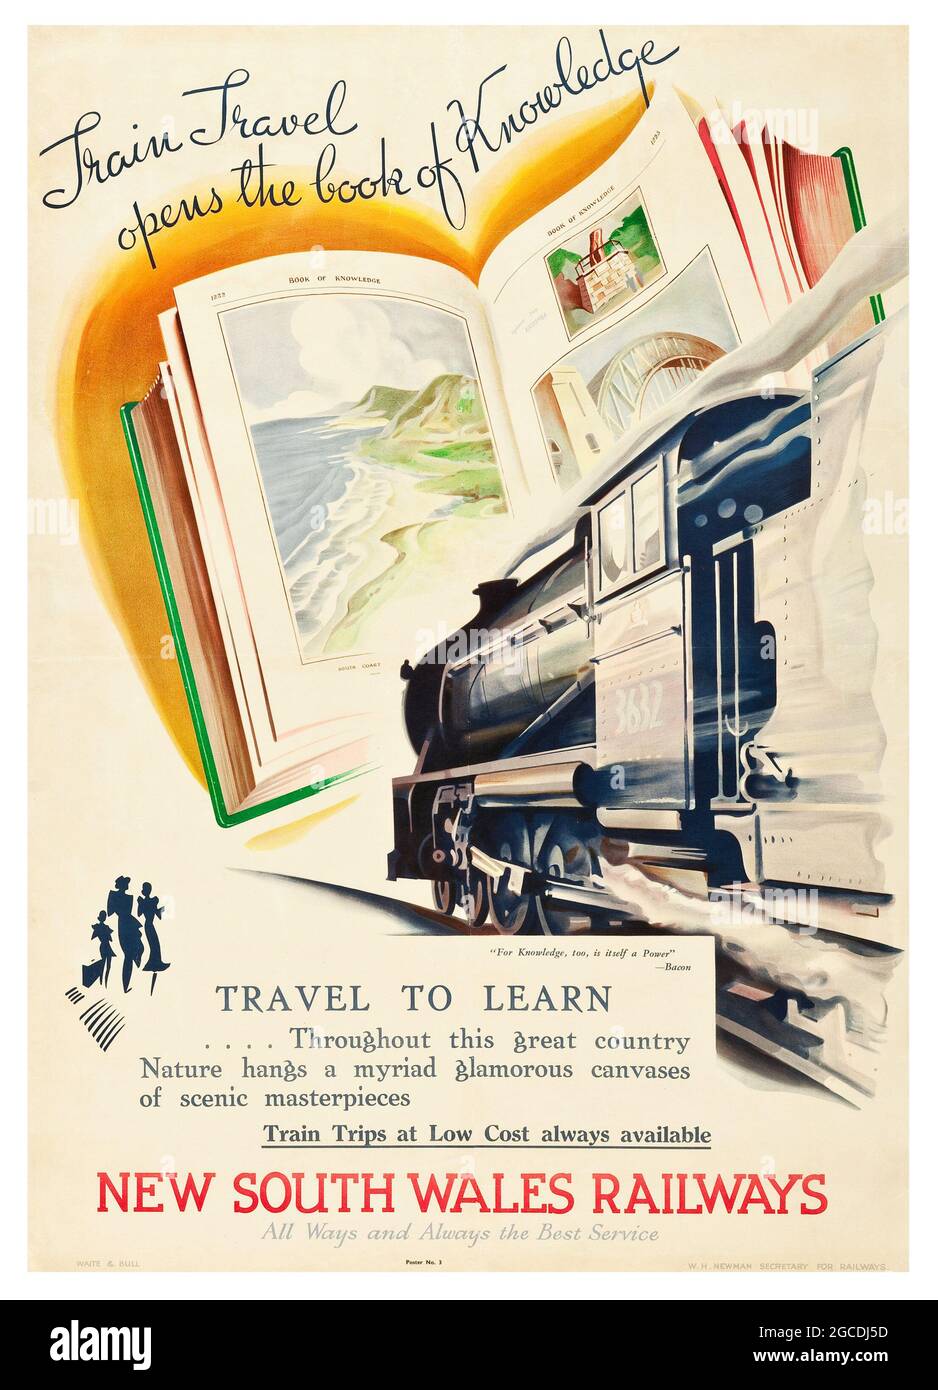 Train Travel ouvre le livre de la connaissance – affiche de voyage (produit par les chemins de fer de la Nouvelle-Galles du Sud) Banque D'Images